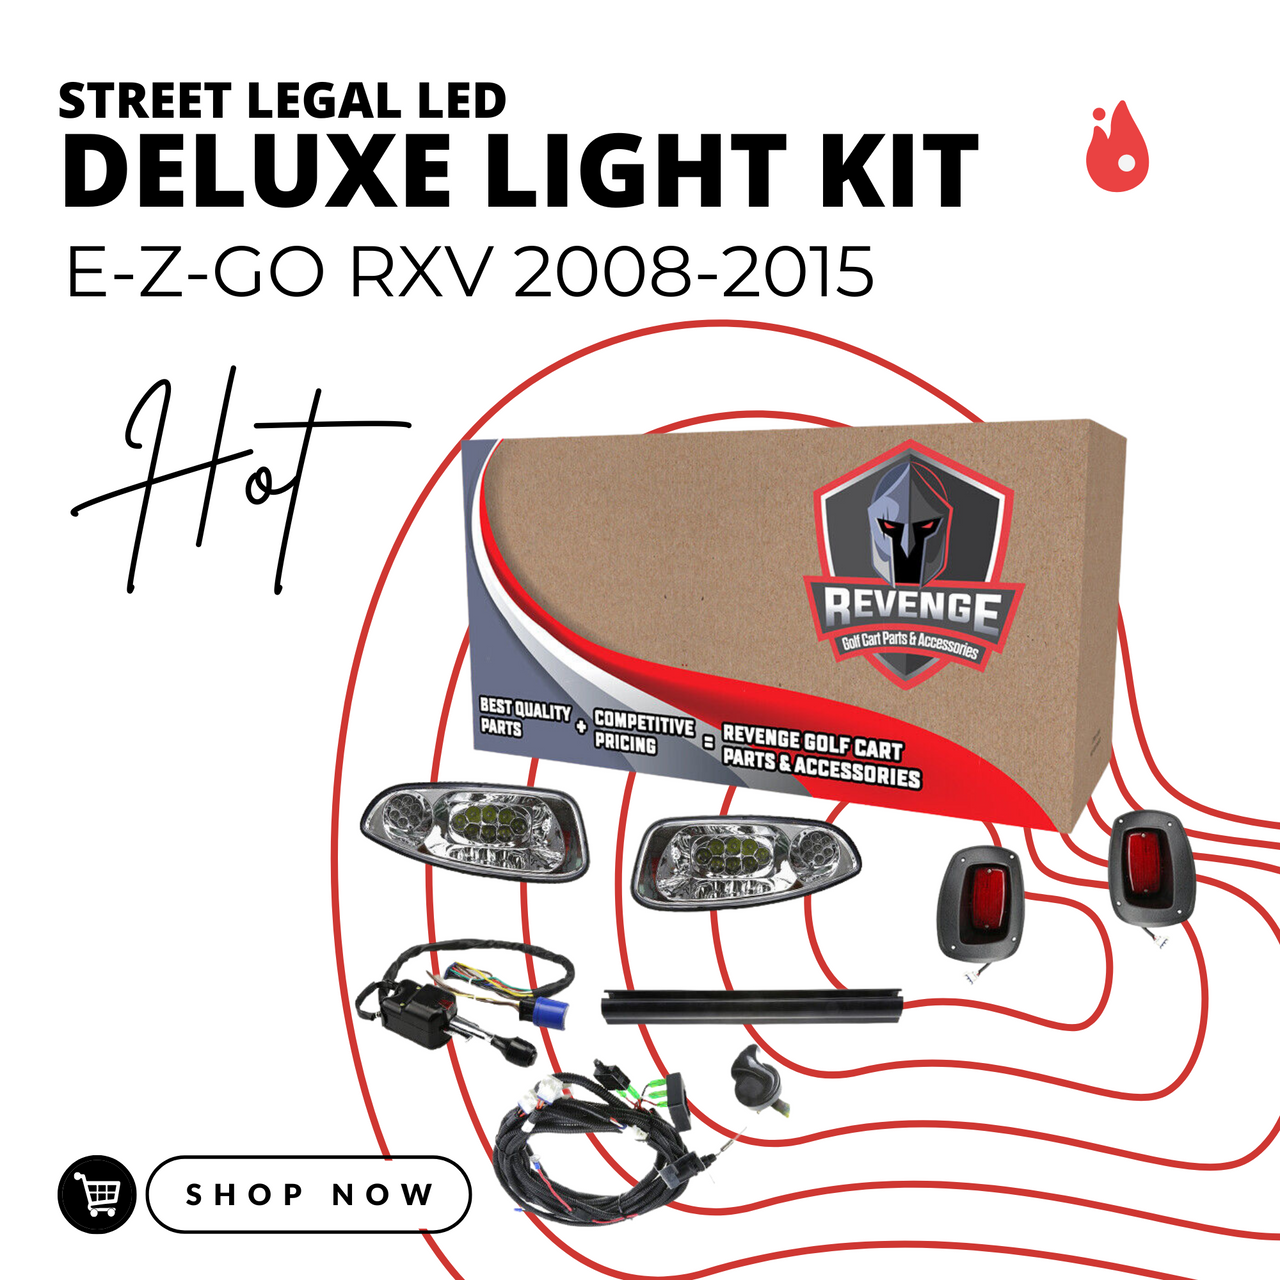 Revenge E-Z-GO RXV LED Deluxe Street Legal Golf Cart Light Kit 2008-2015, LIGHT-L1002KLDKO-D1-X1